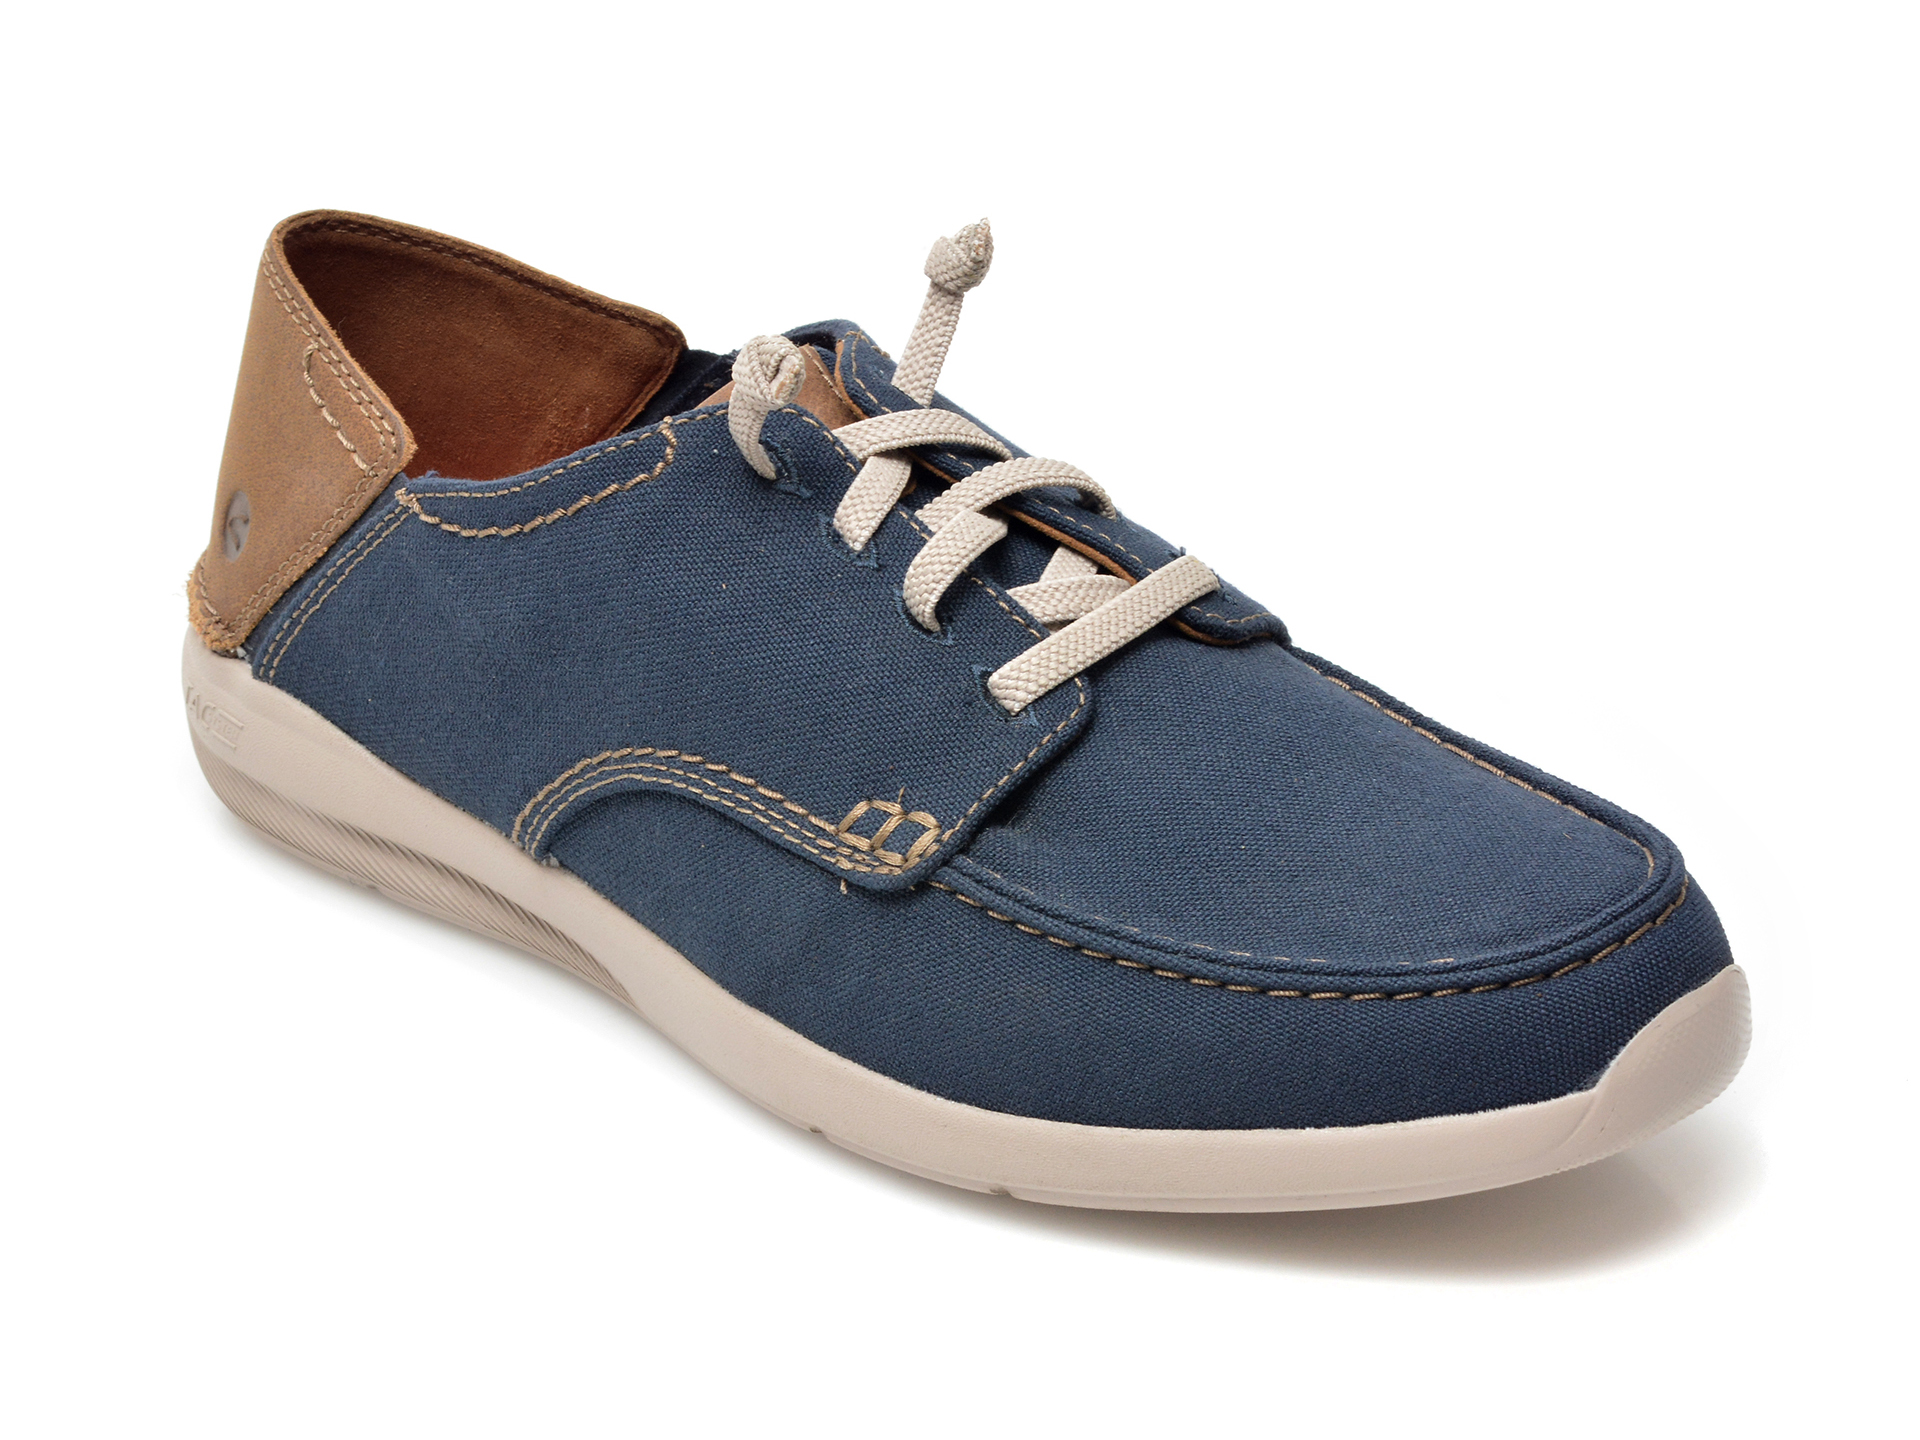 Pantofi CLARKS bleumarin, GORWIN LACE, din material textil Clarks Clarks